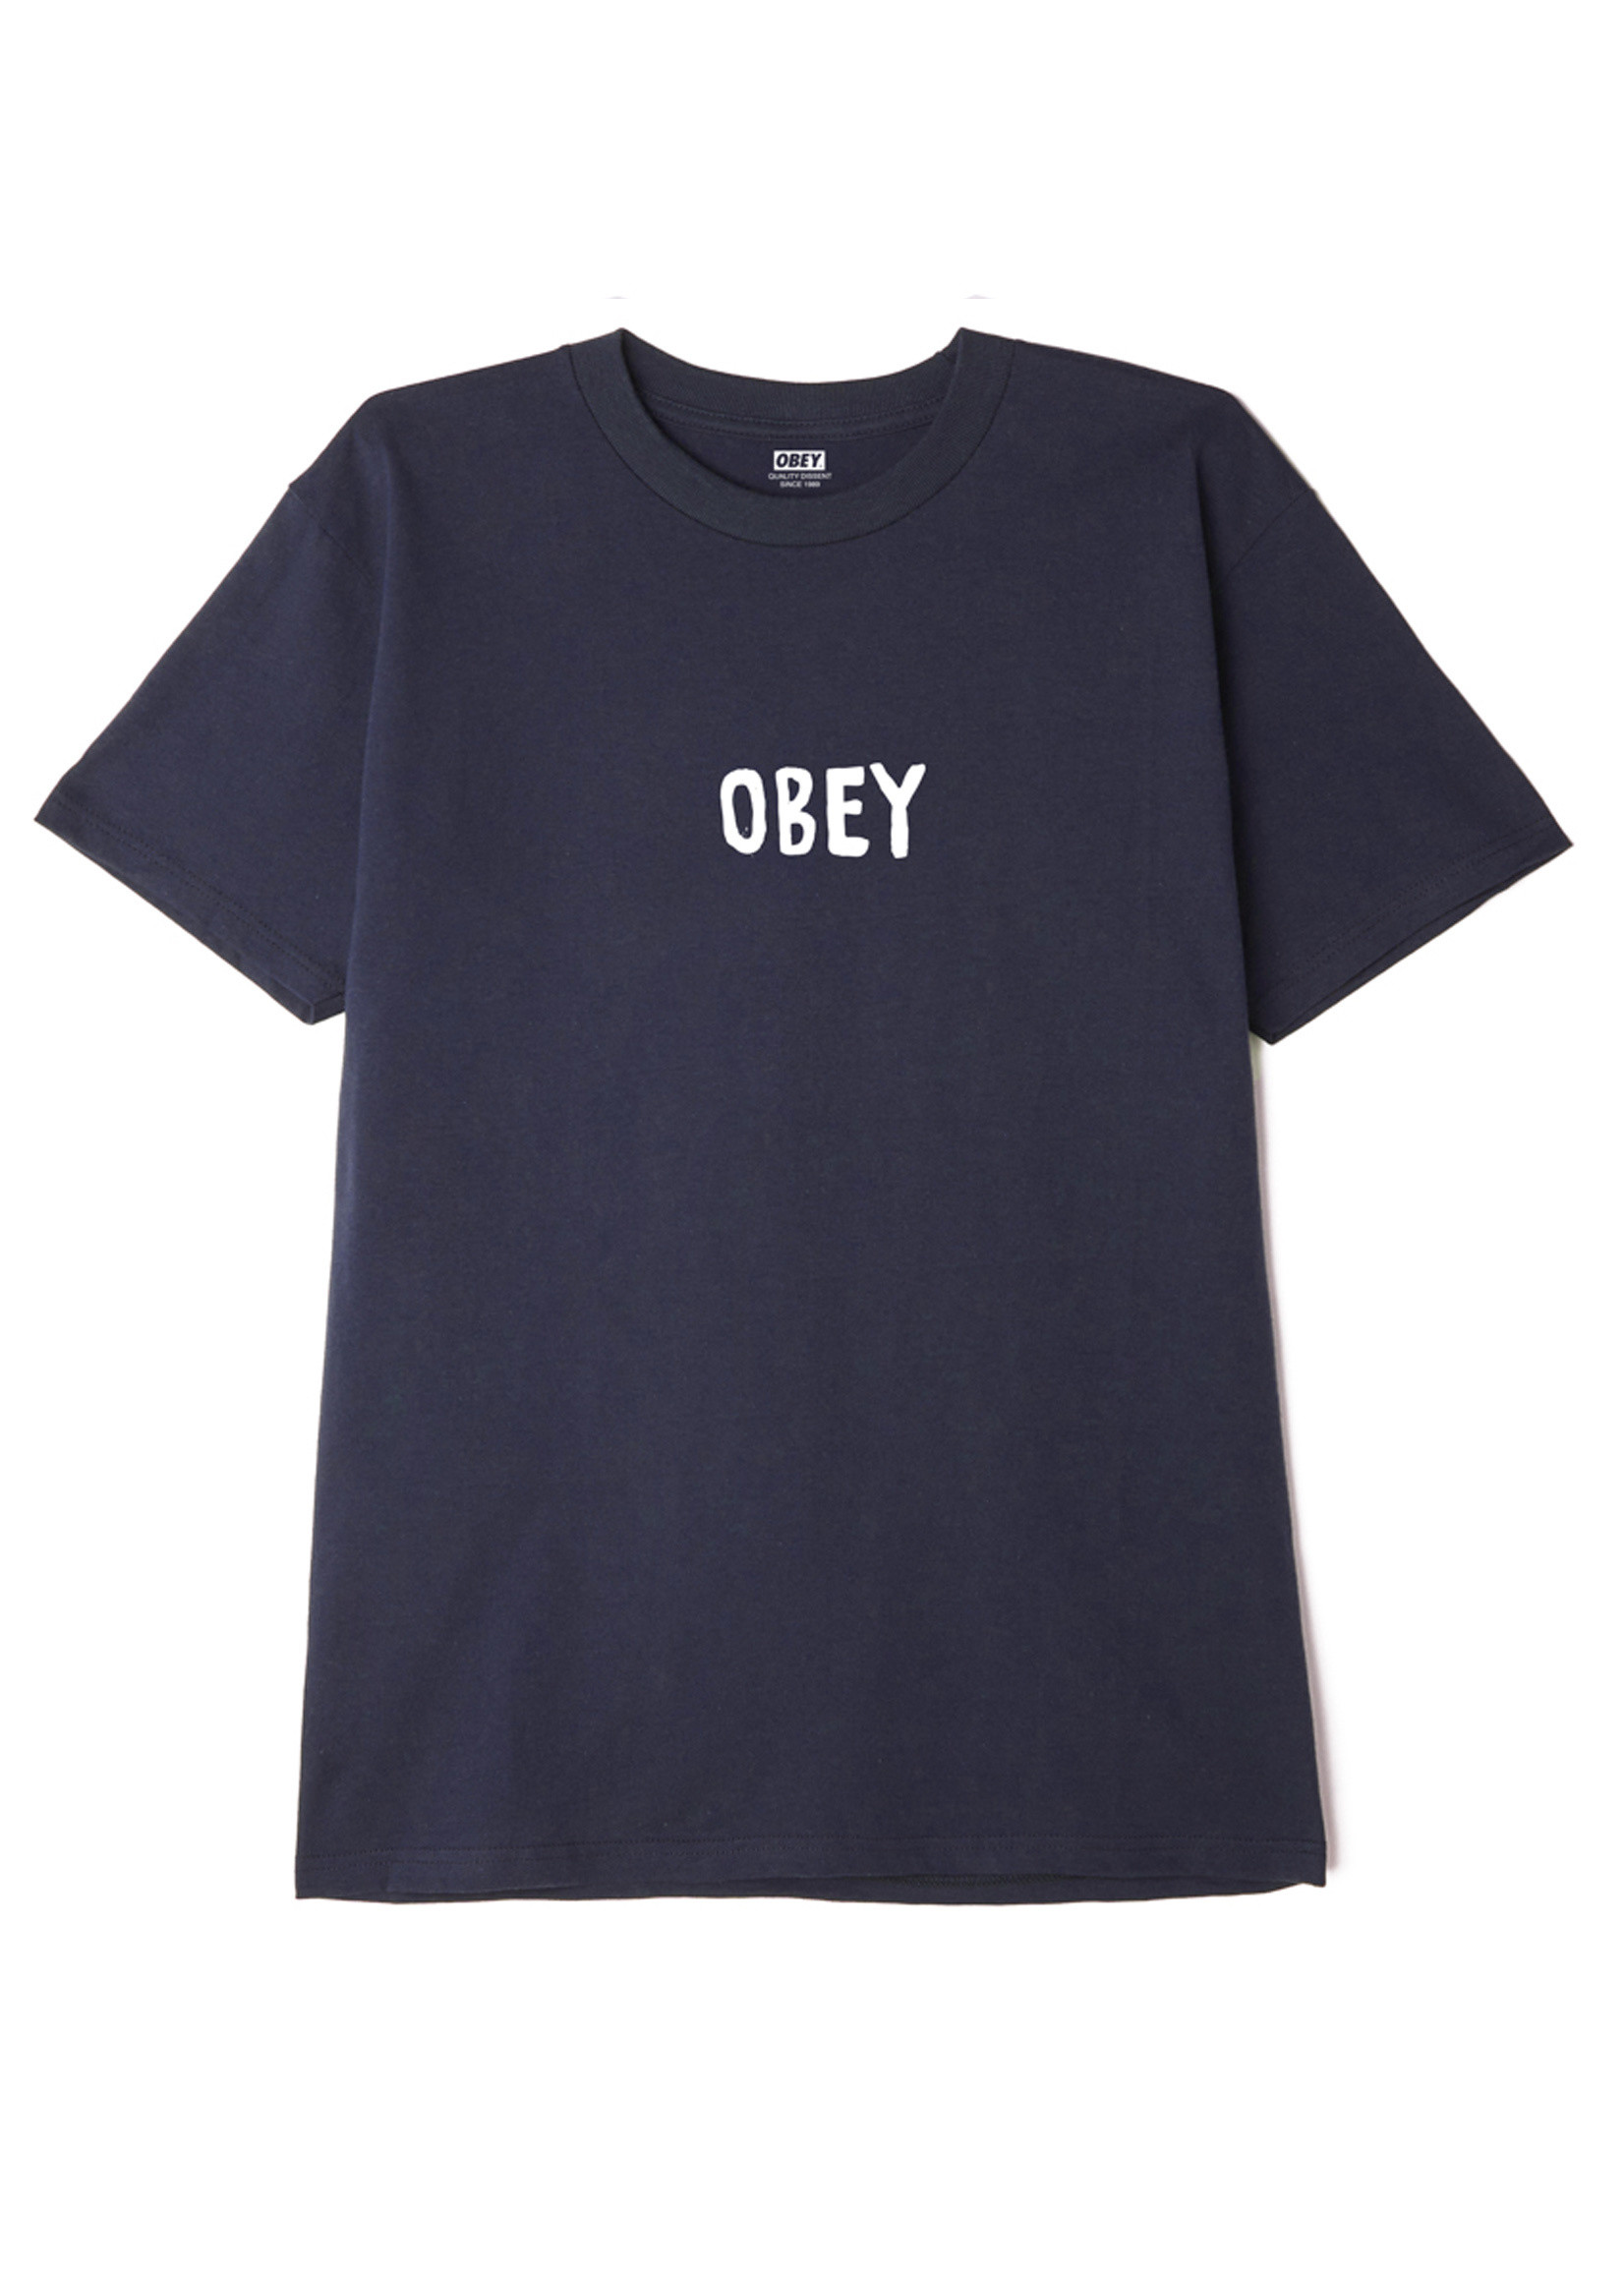 OBEY OBEY / OG Tee